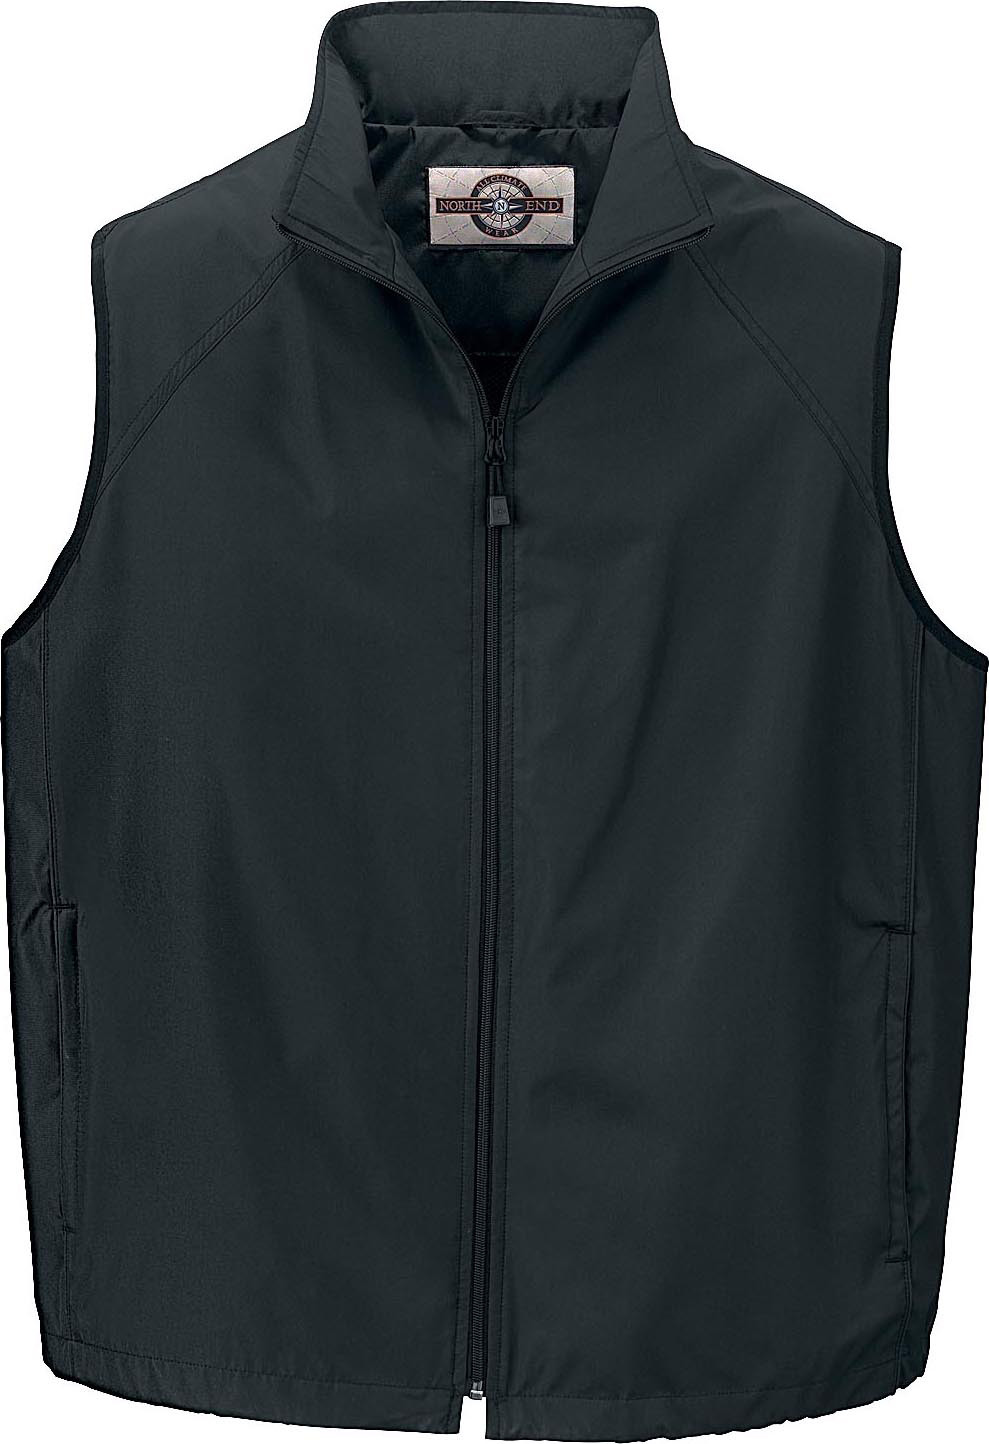 Ash City Techno series 88097 - Men's Active Wear Vest